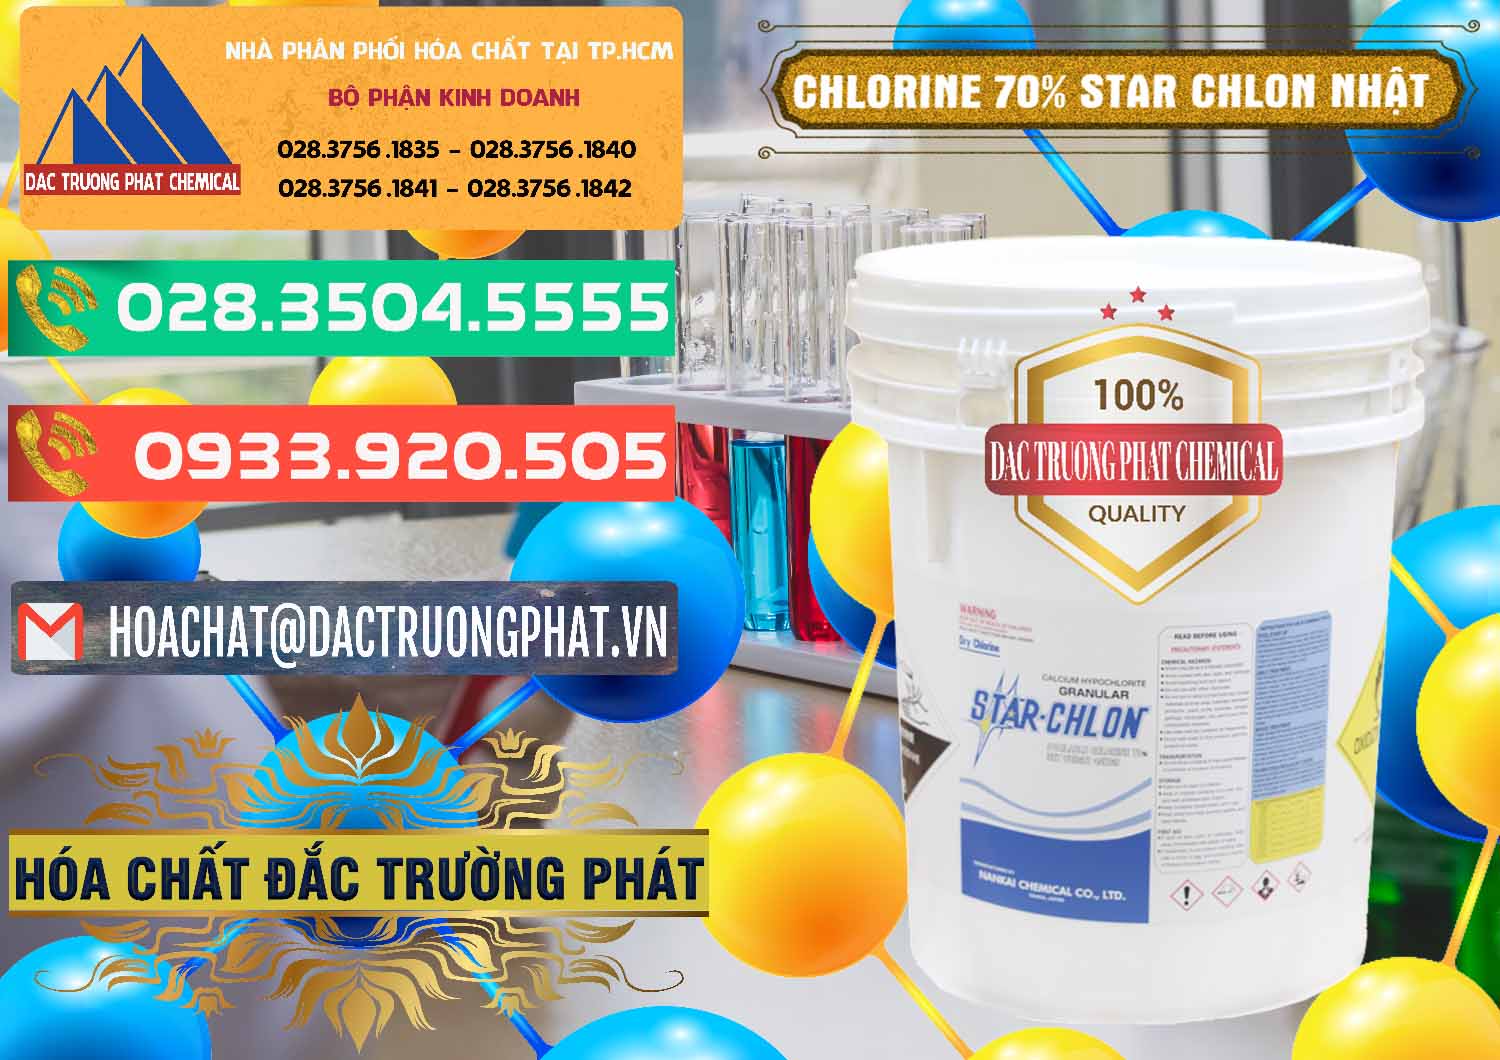 Cty bán & phân phối Clorin – Chlorine 70% Star Chlon Nhật Bản Japan - 0243 - Đơn vị chuyên cung cấp ( kinh doanh ) hóa chất tại TP.HCM - congtyhoachat.com.vn